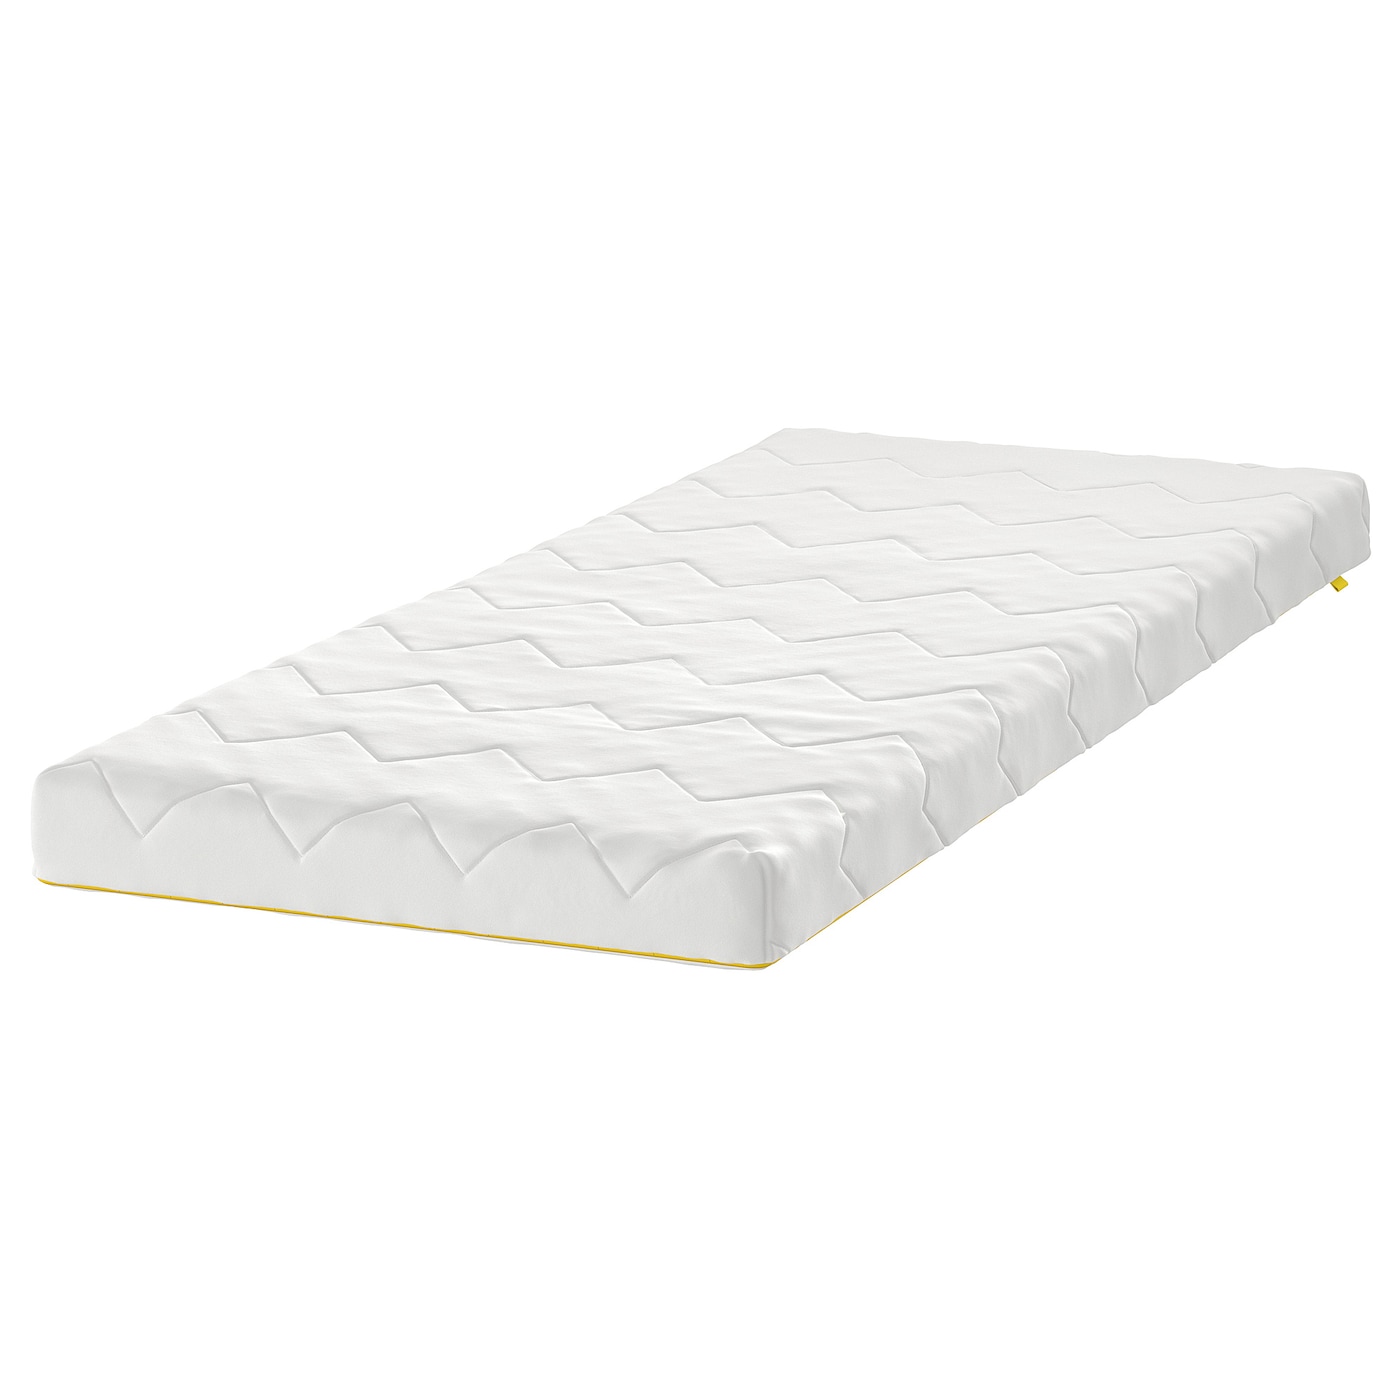 Матрас для детской кроватки - UNDERLIG IKEA/ УНДЕРЛИГ ИКЕА, 70х160 см, белый